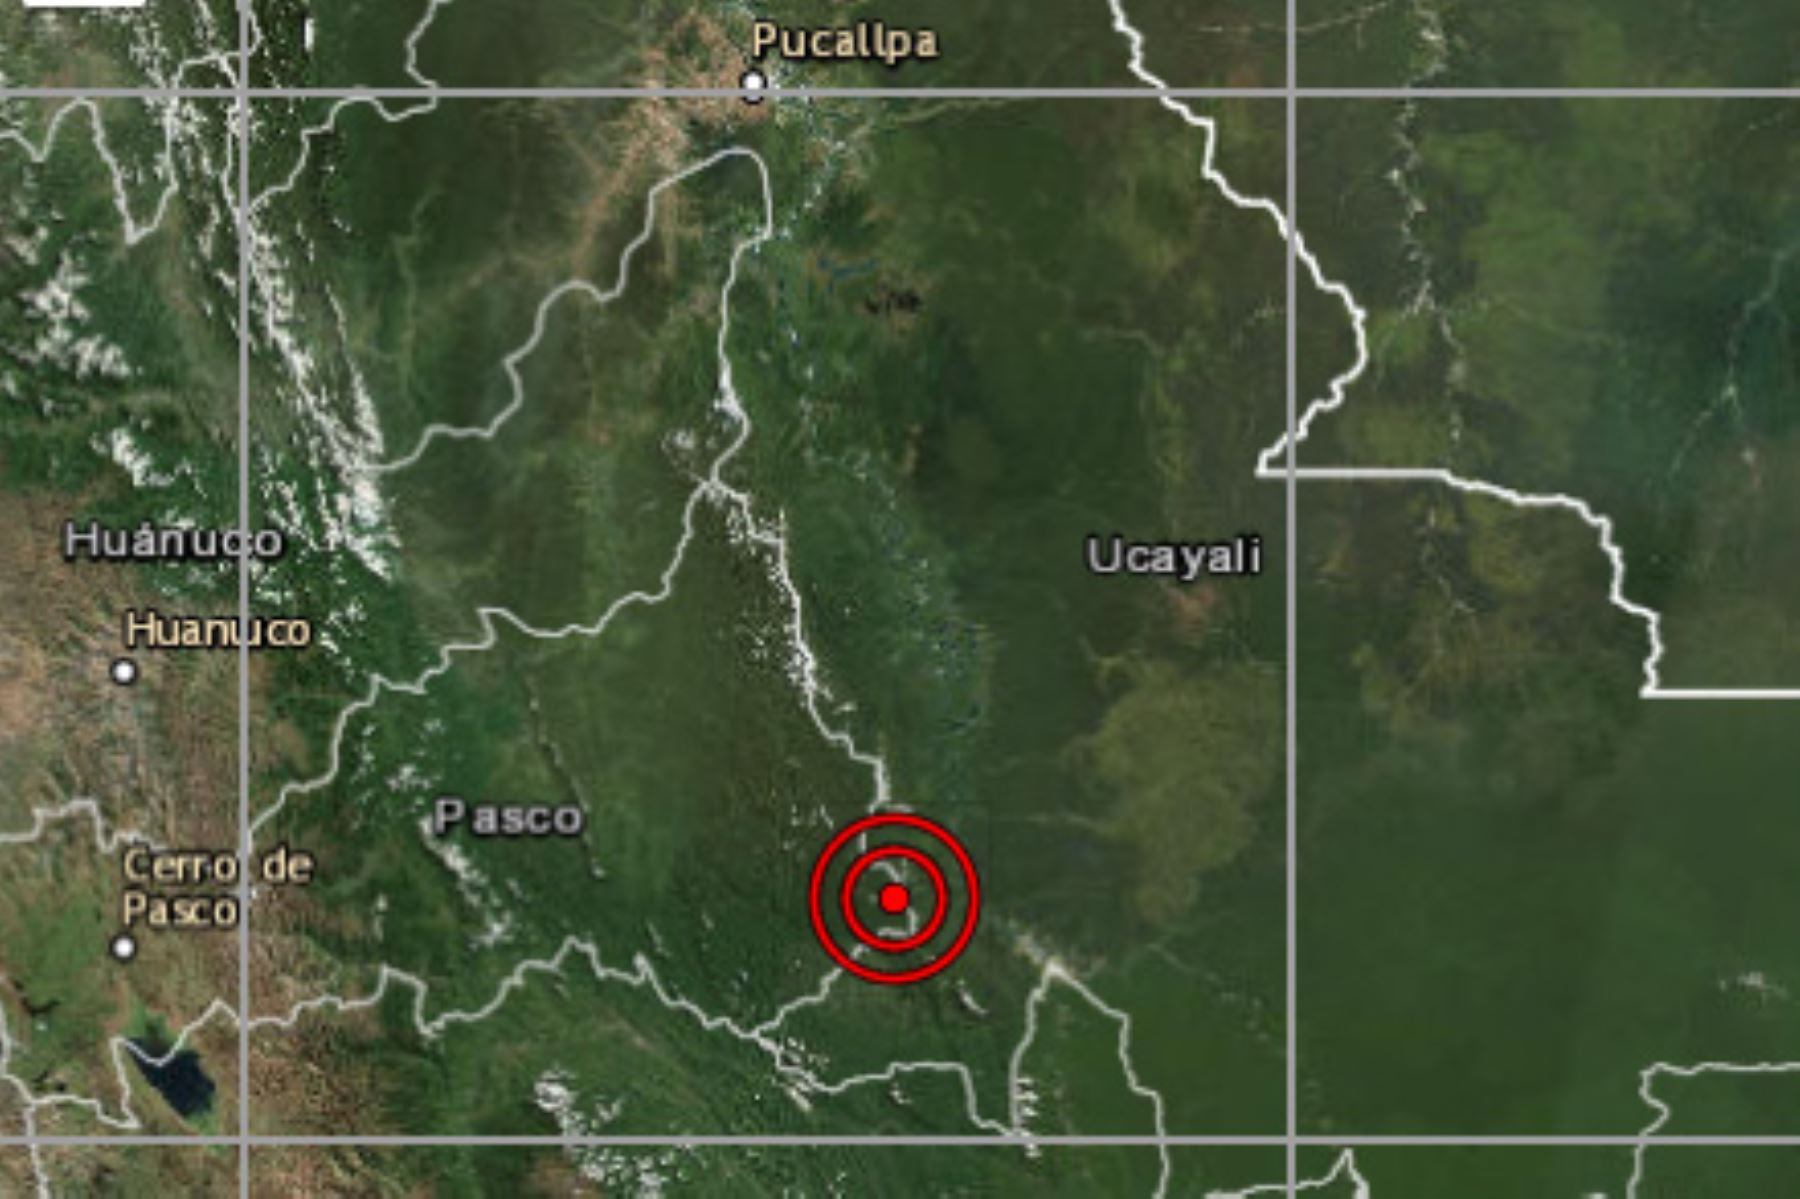 Movimiento sísmico de magnitud 4 se registró esta noche en la provincia de Atalaya, región Ucayali, reportó el IGP.